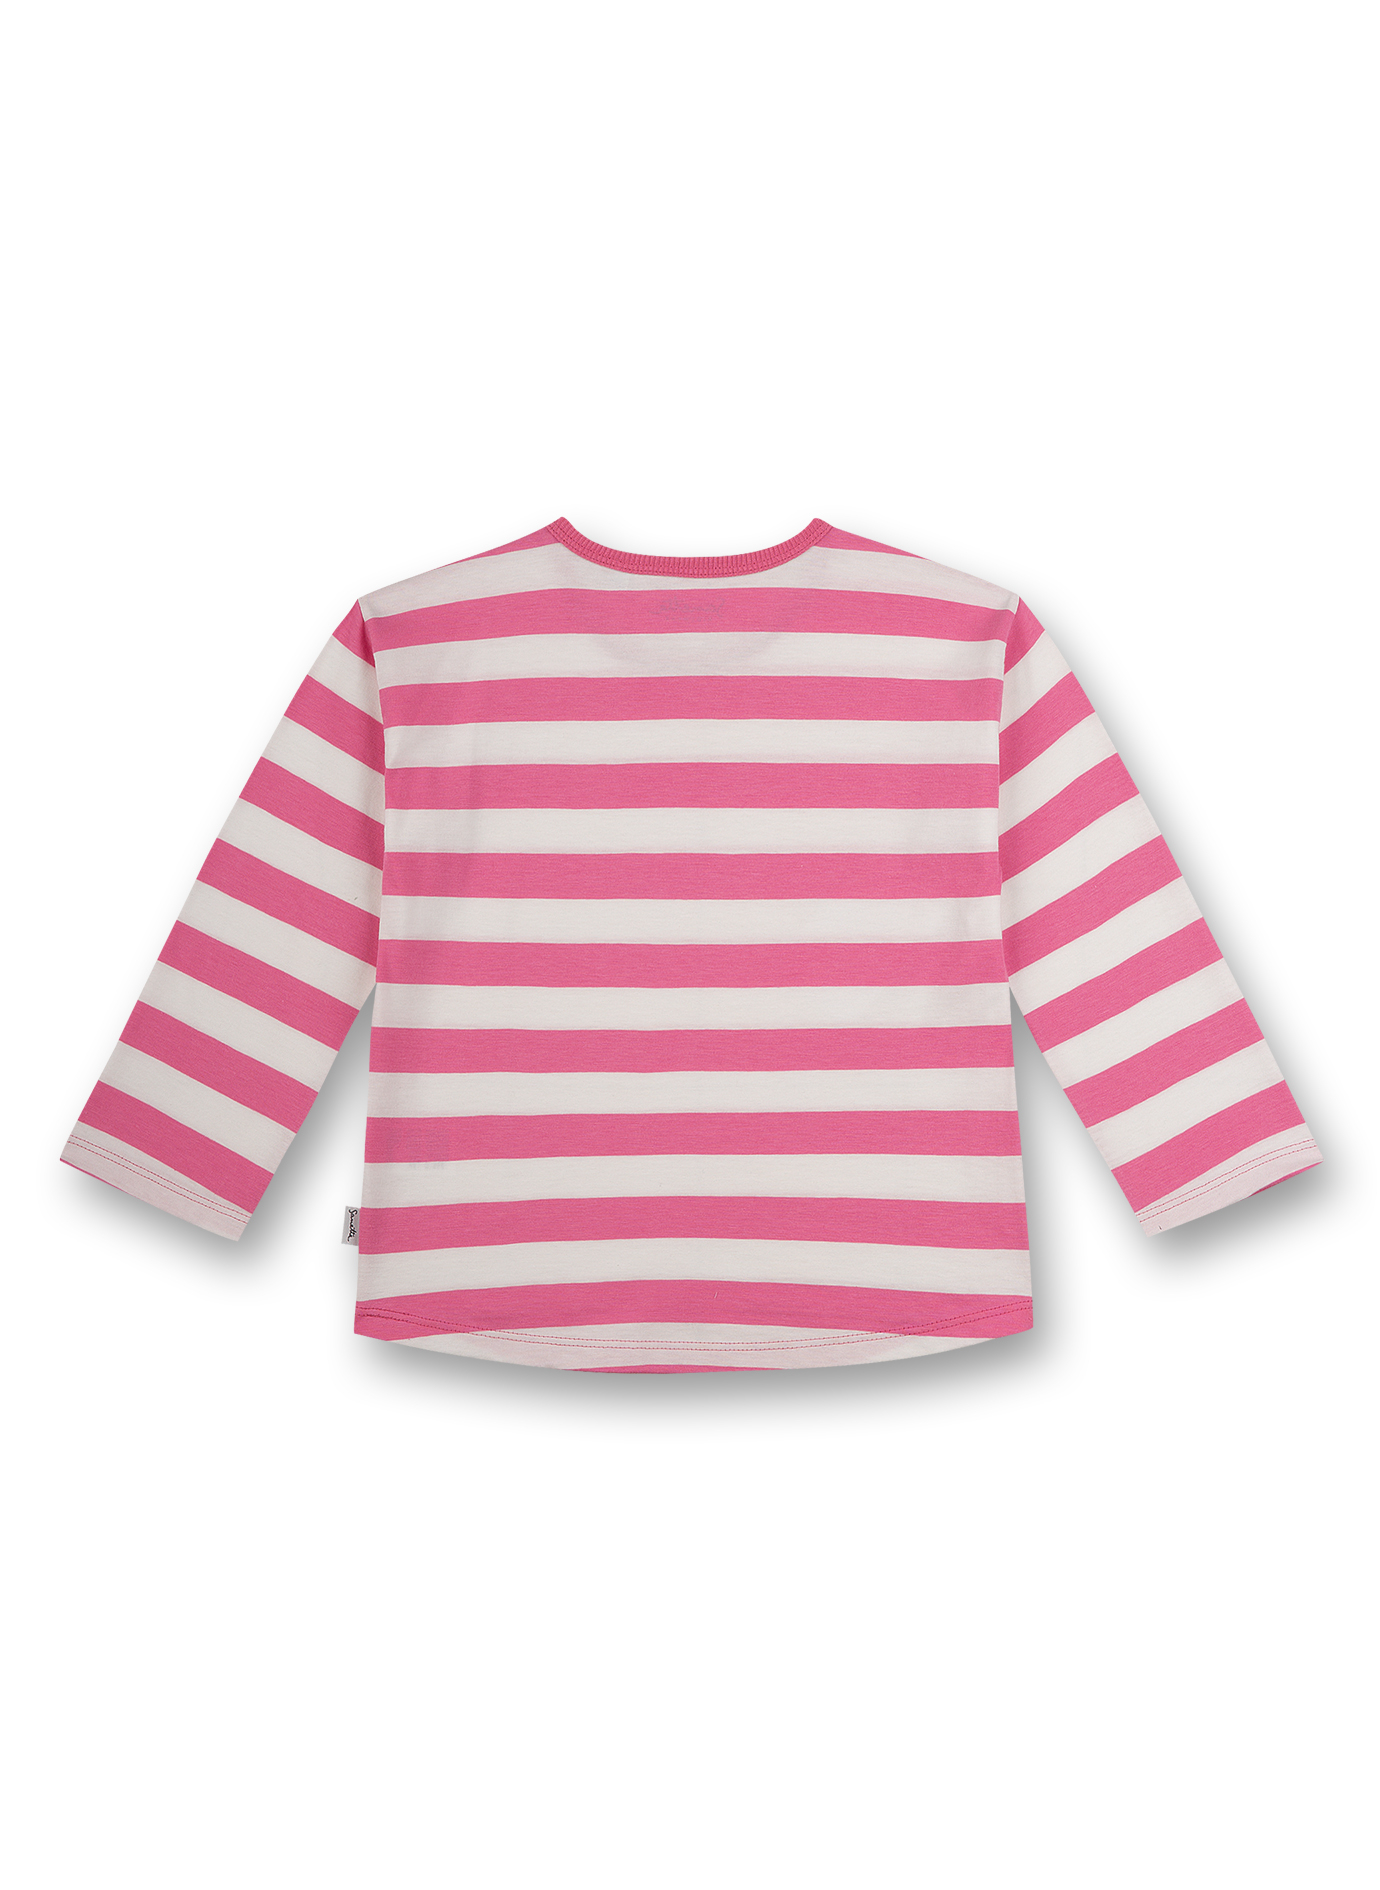 Mädchen-Shirt langarm Pink Flower